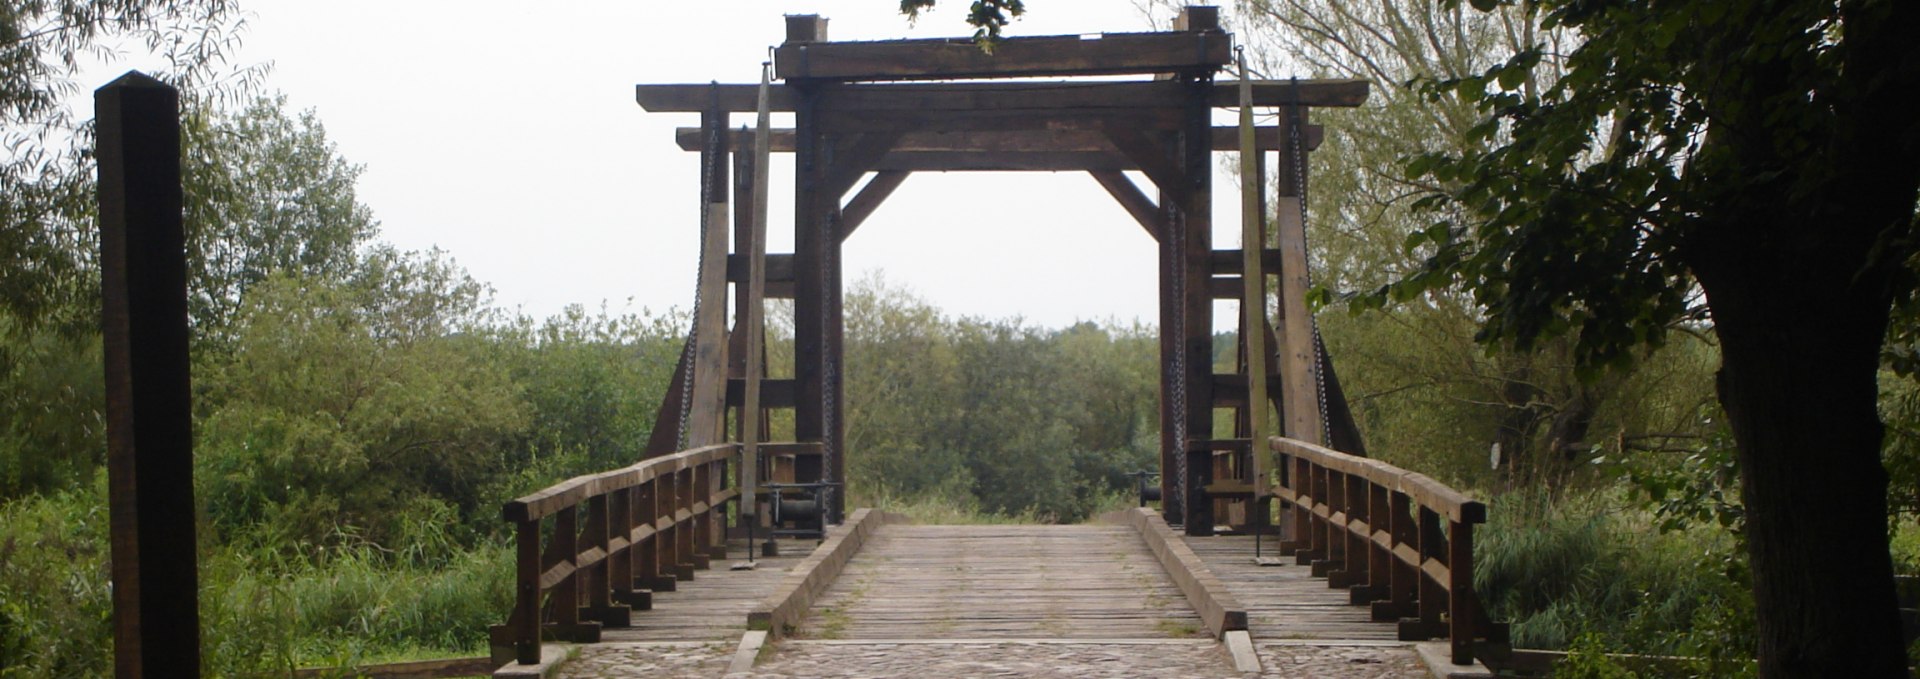 Wooden drawbridge Nehringen, © Tourismusverband Vorpommern e.V.